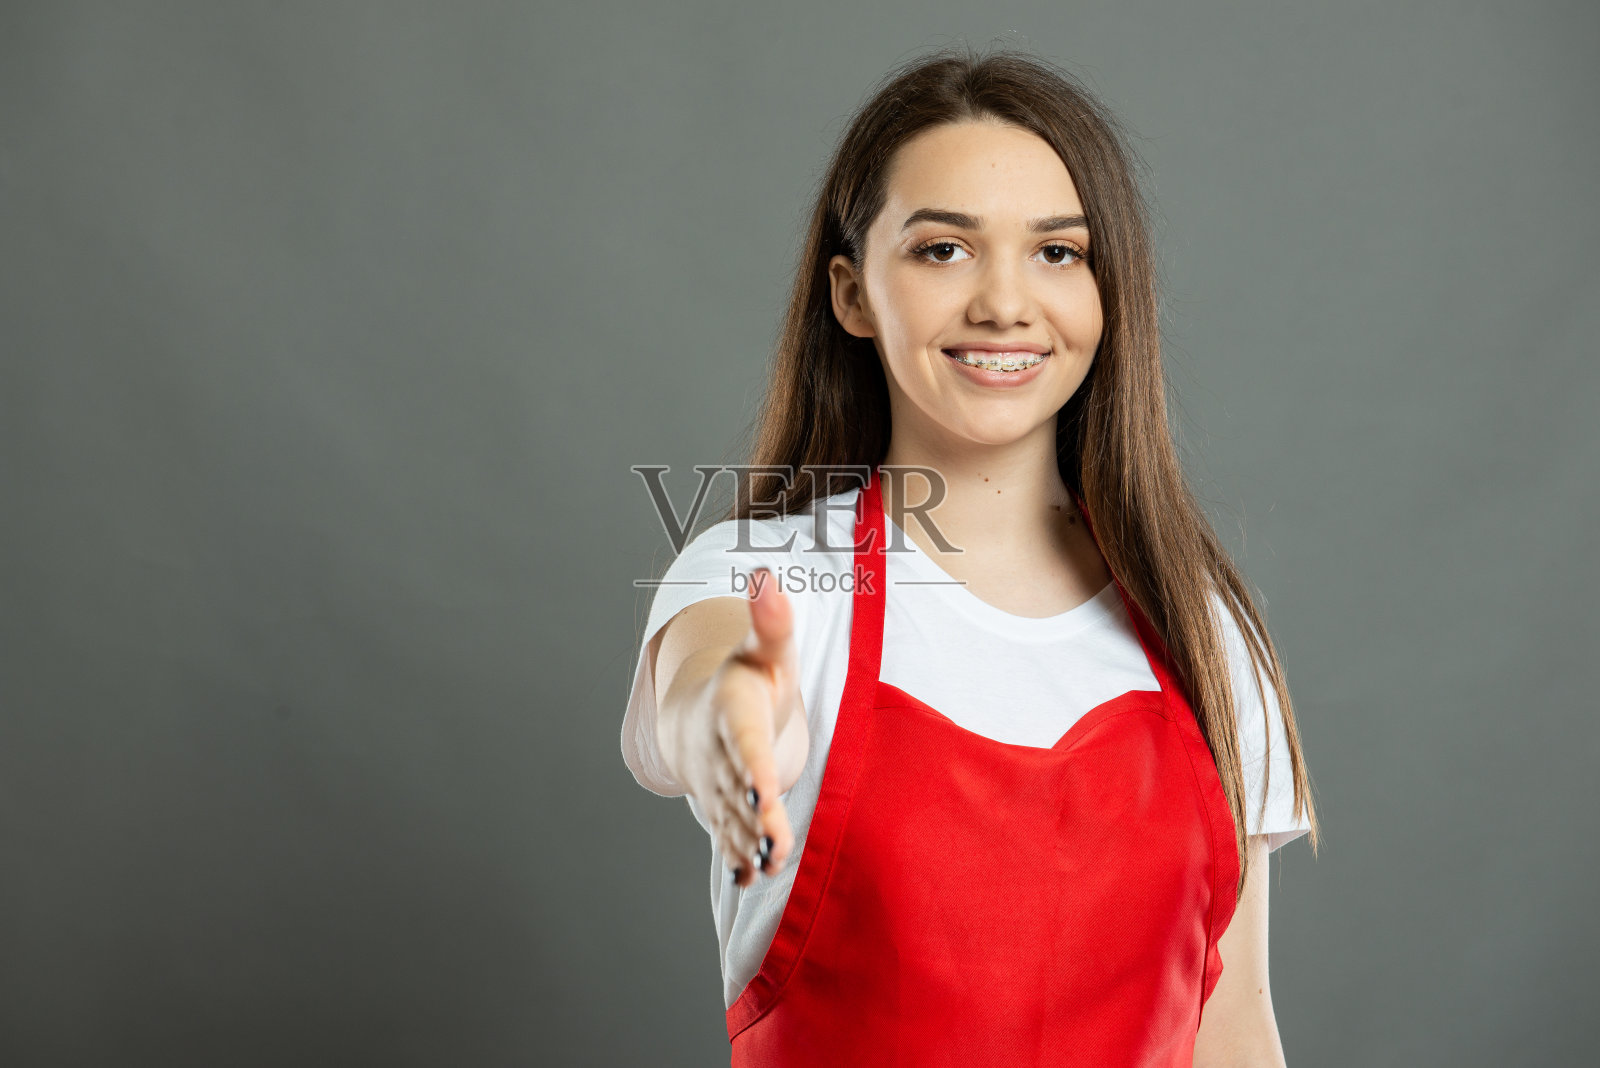 年轻的女超市员工提供握手的肖像照片摄影图片